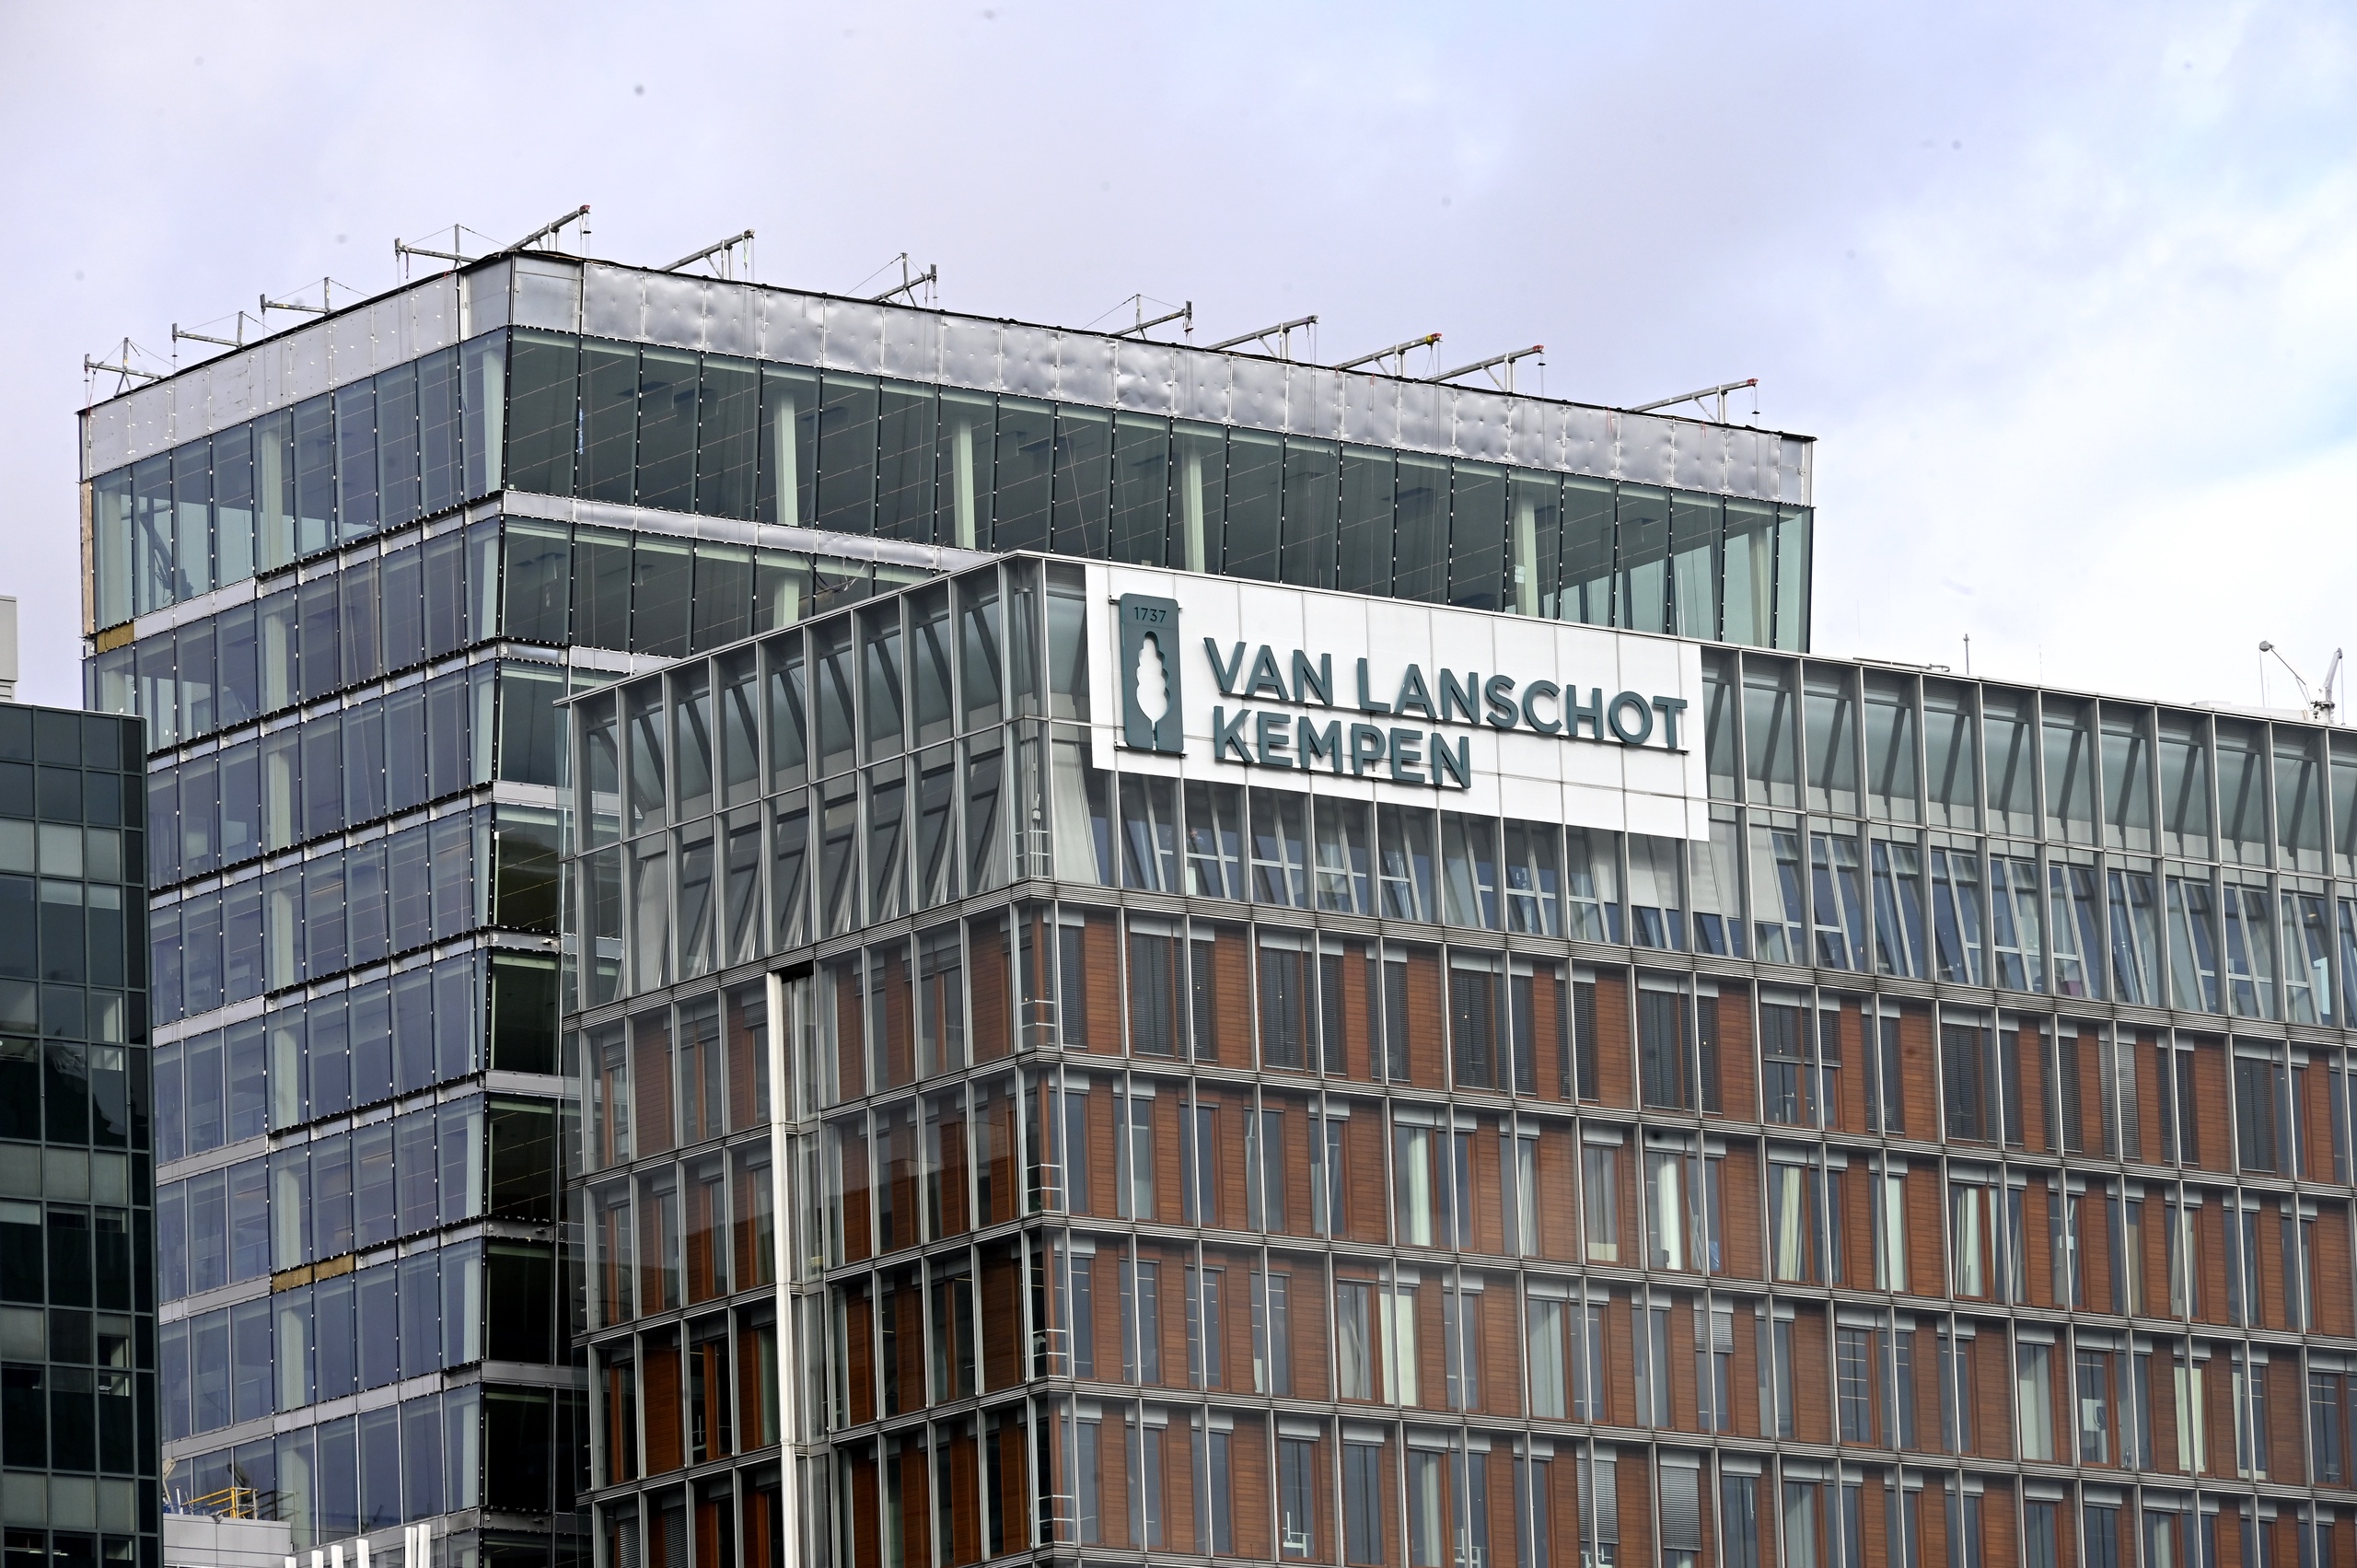 Bank Van Lanschot Kempen neemt het beleggingsplatform van Robeco over. De activiteiten van Robeco worden ondergebracht in ‘Evi van Lanschot’. De samenwerking met Robeco is voor Van Lanschot Kempen naar eigen zeggen een kans om versneld te kunnen groeien.